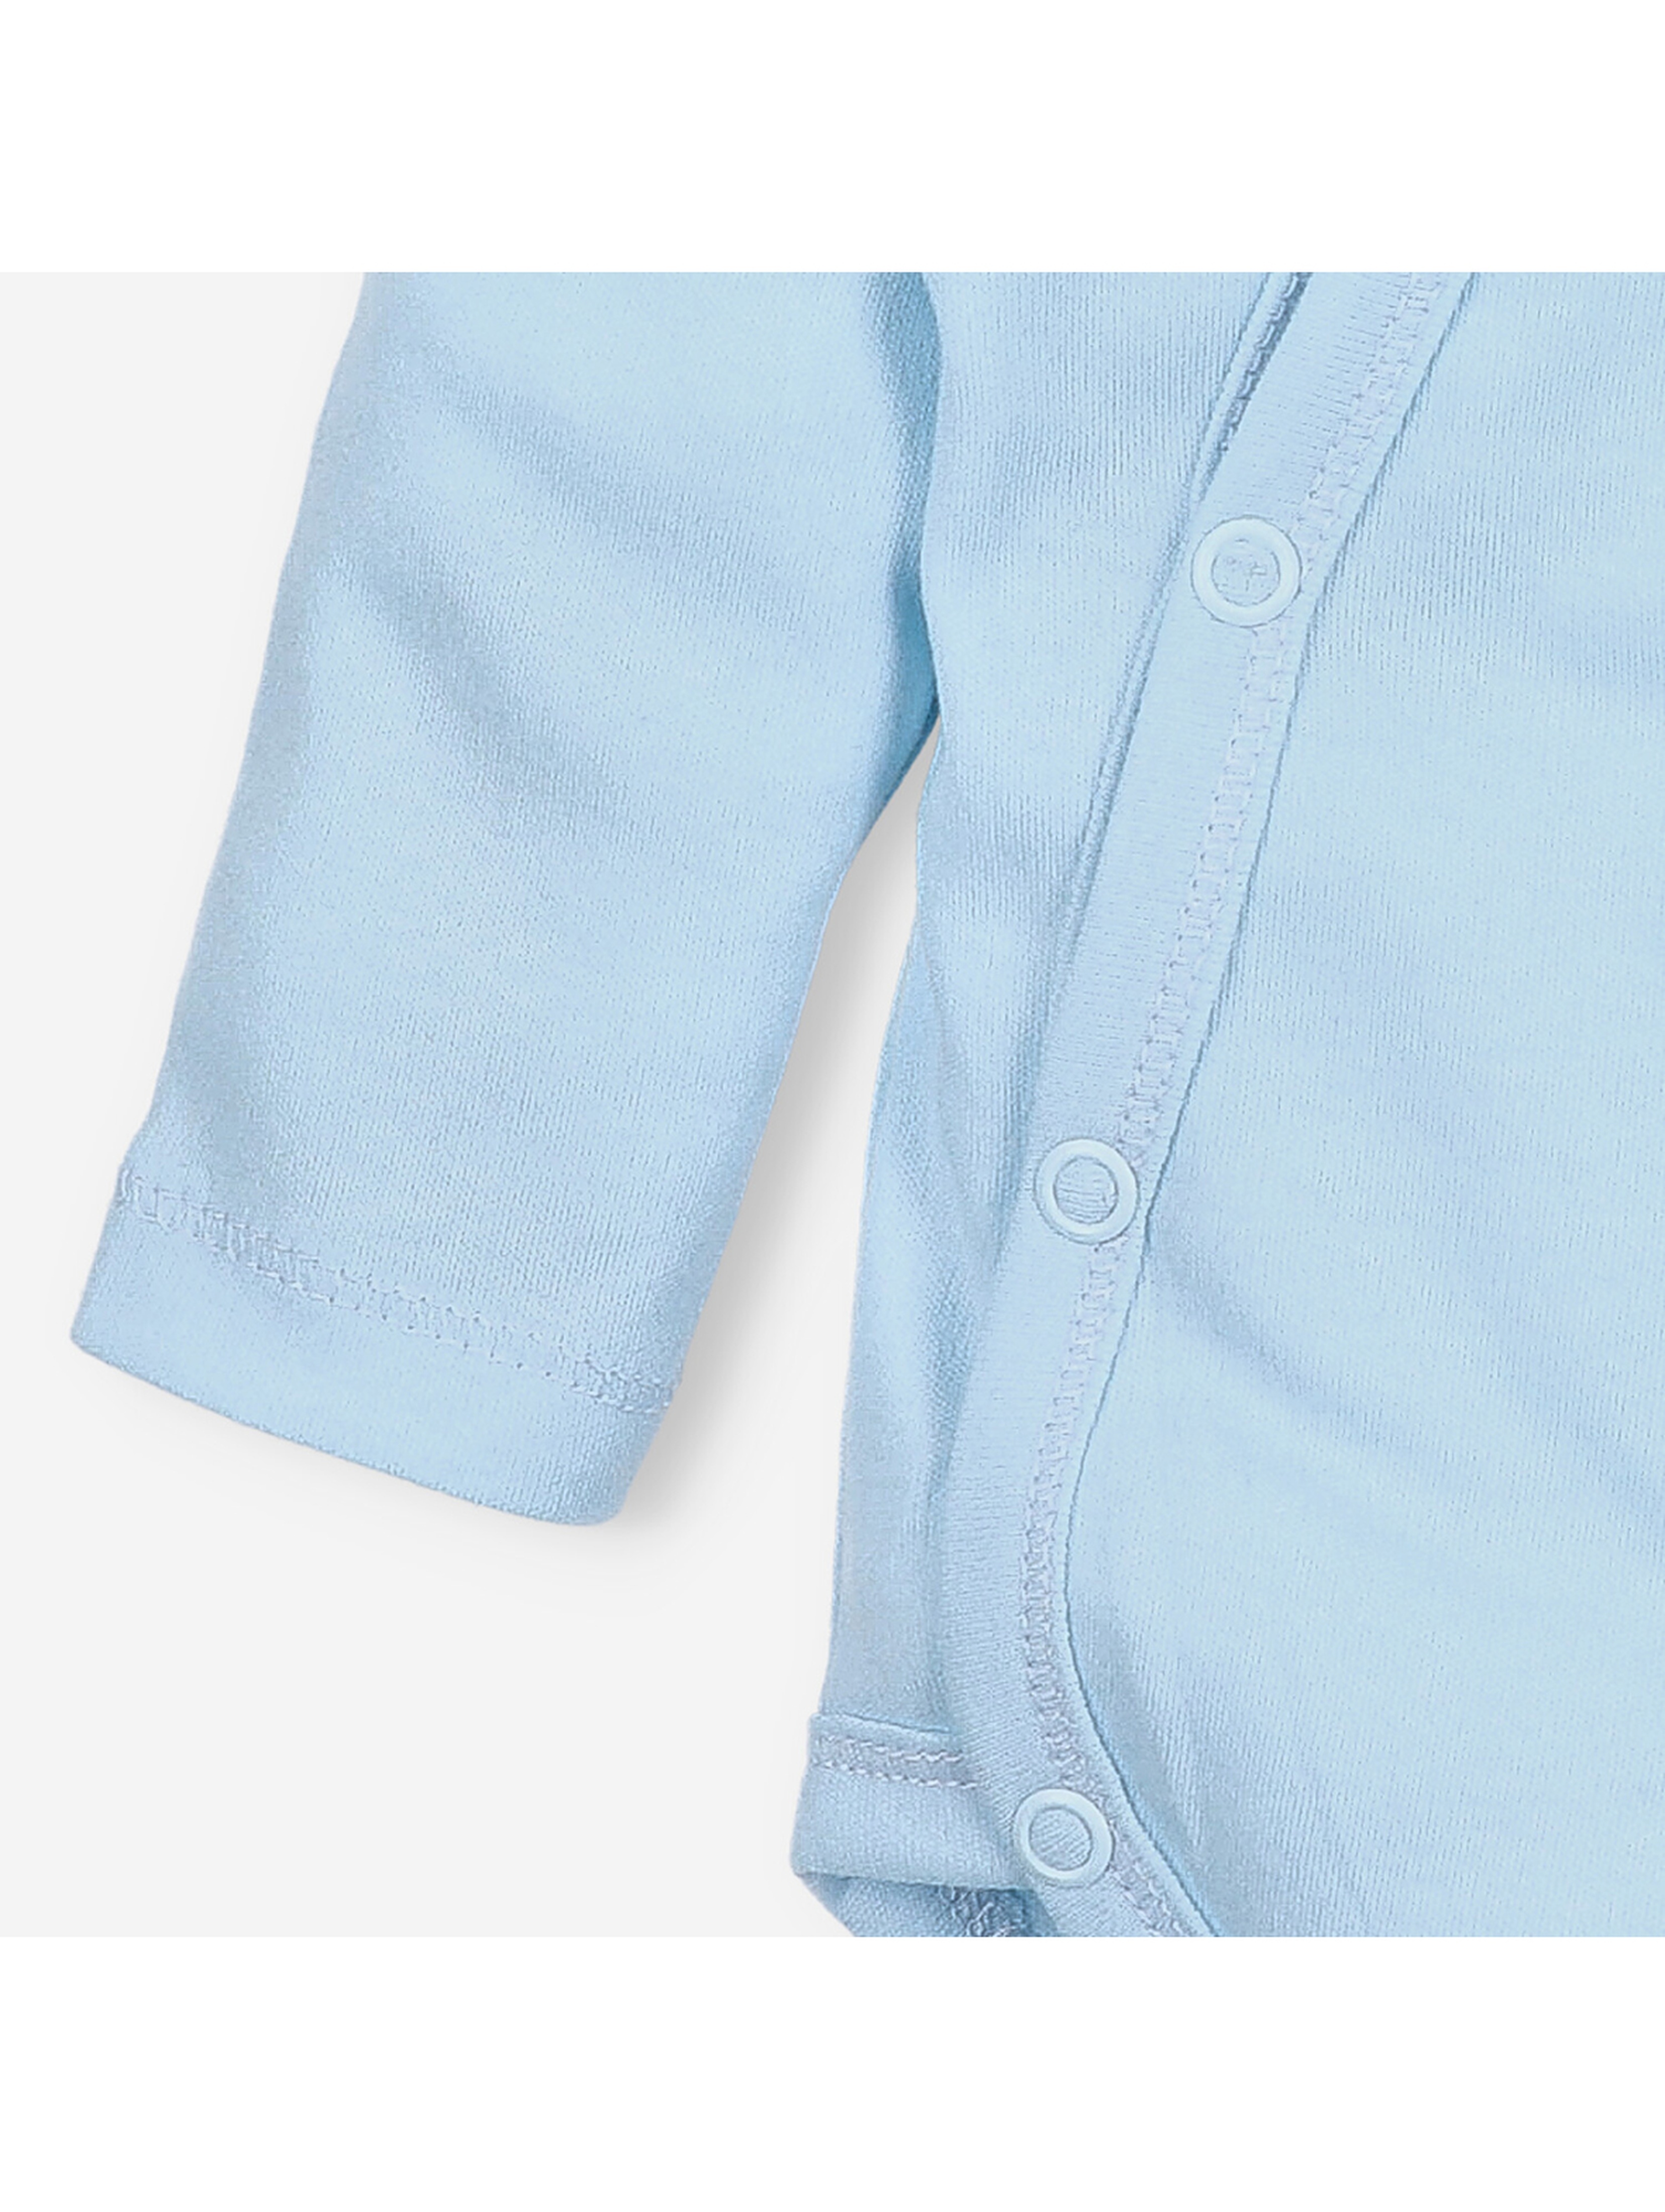 Body niemowlęce z bawełny organicznej - niebieskie - długi rękaw